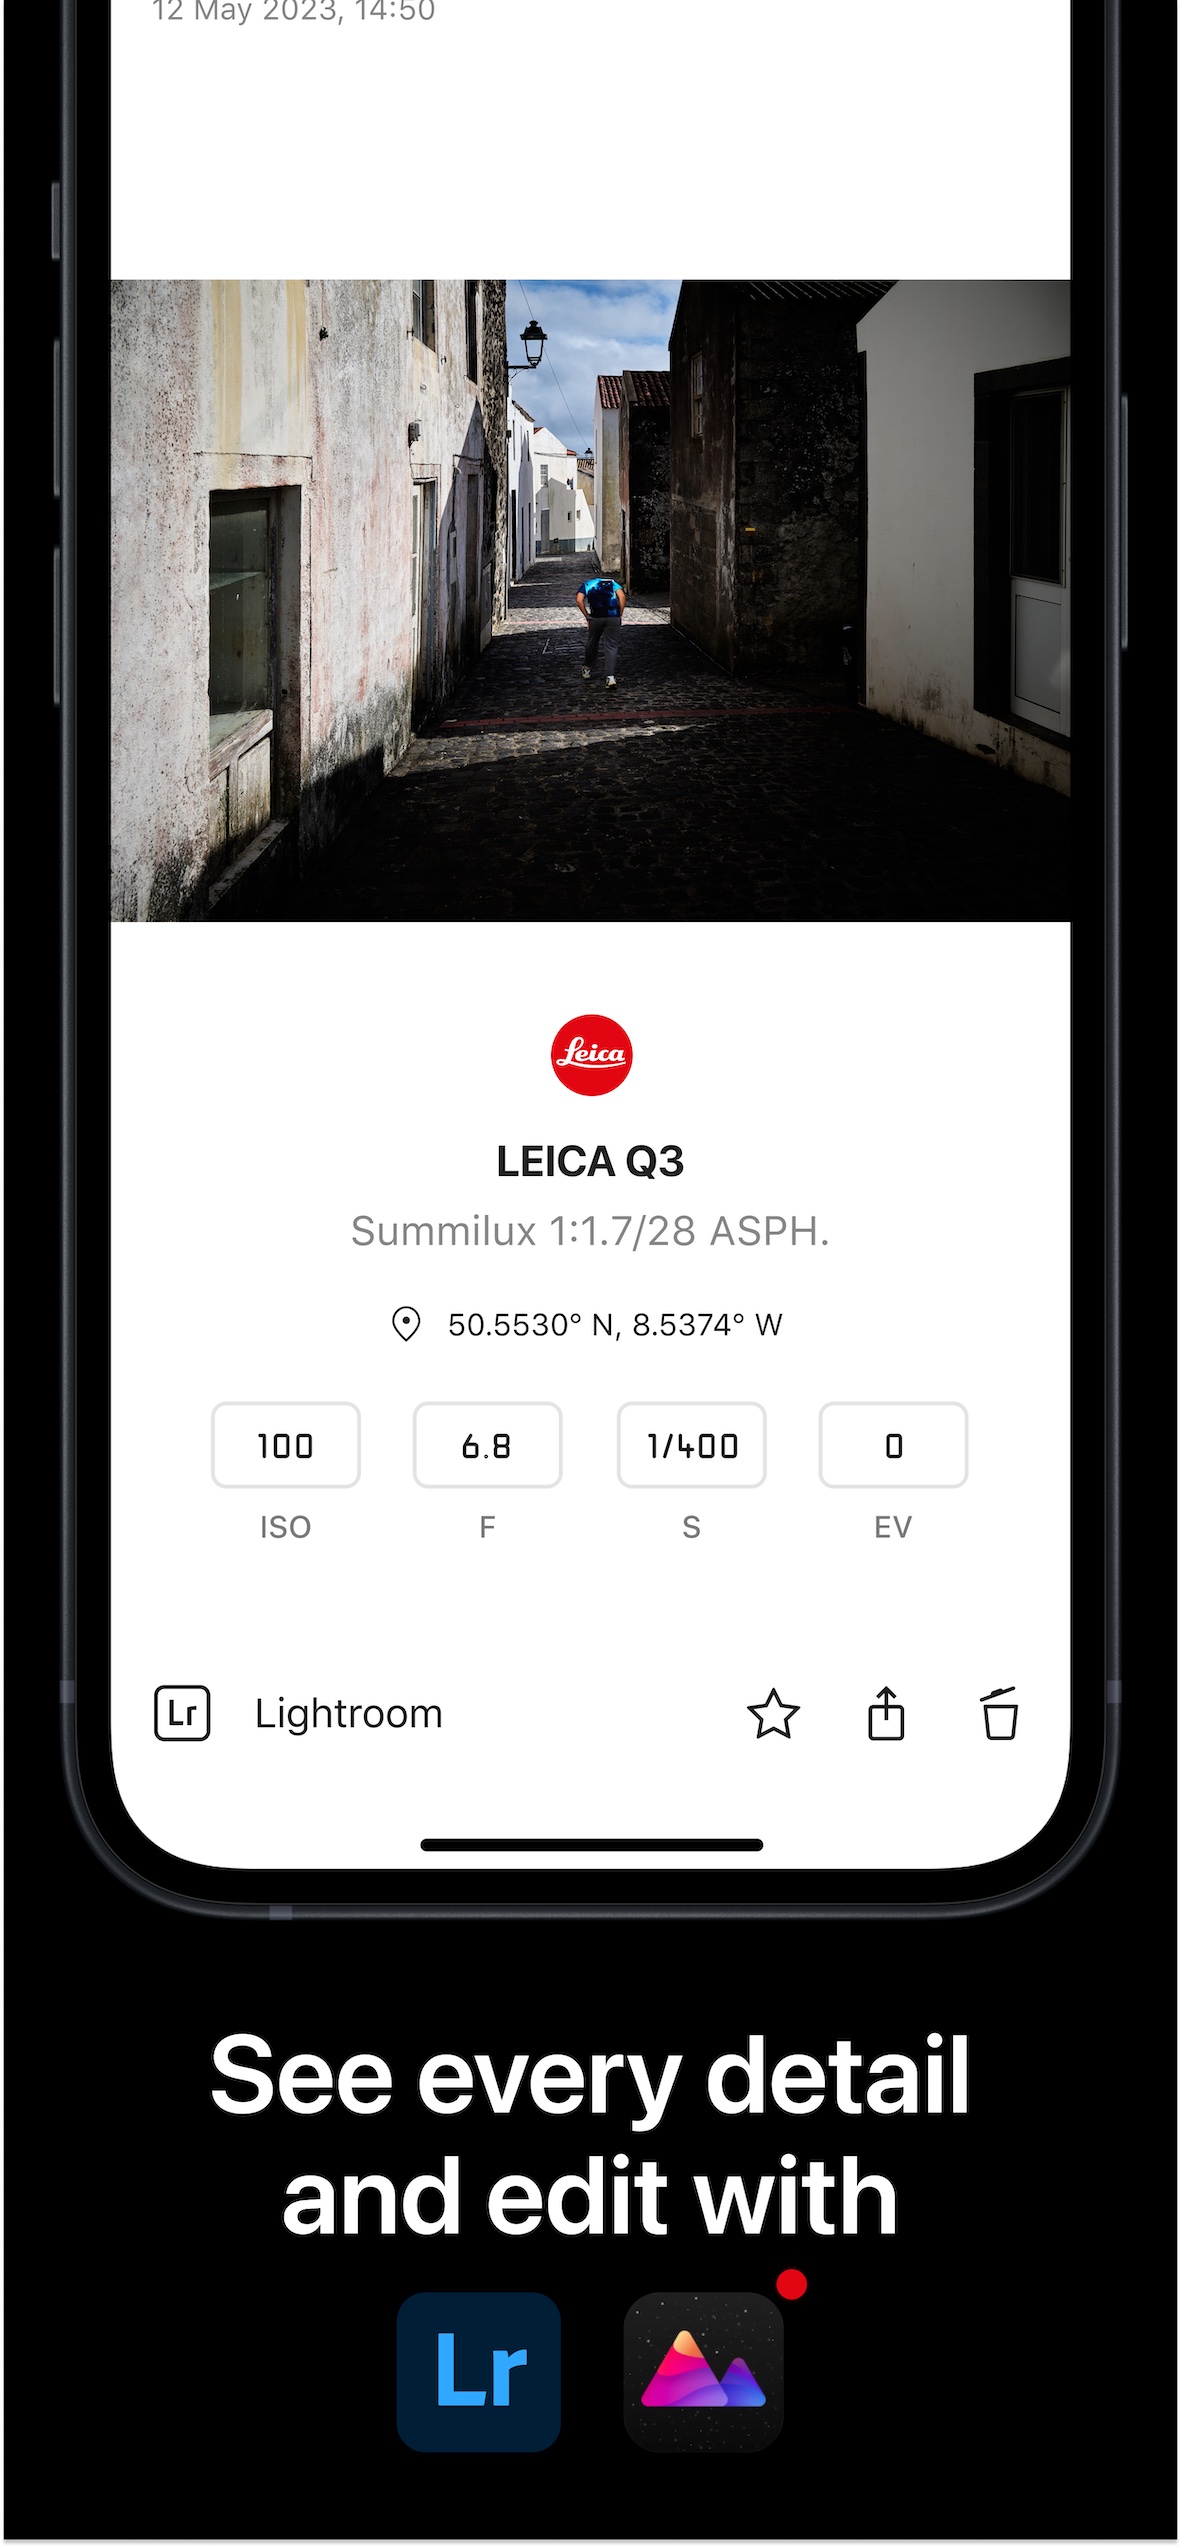 Leica FOTOS App 4.0 (c) Leica Camera AG